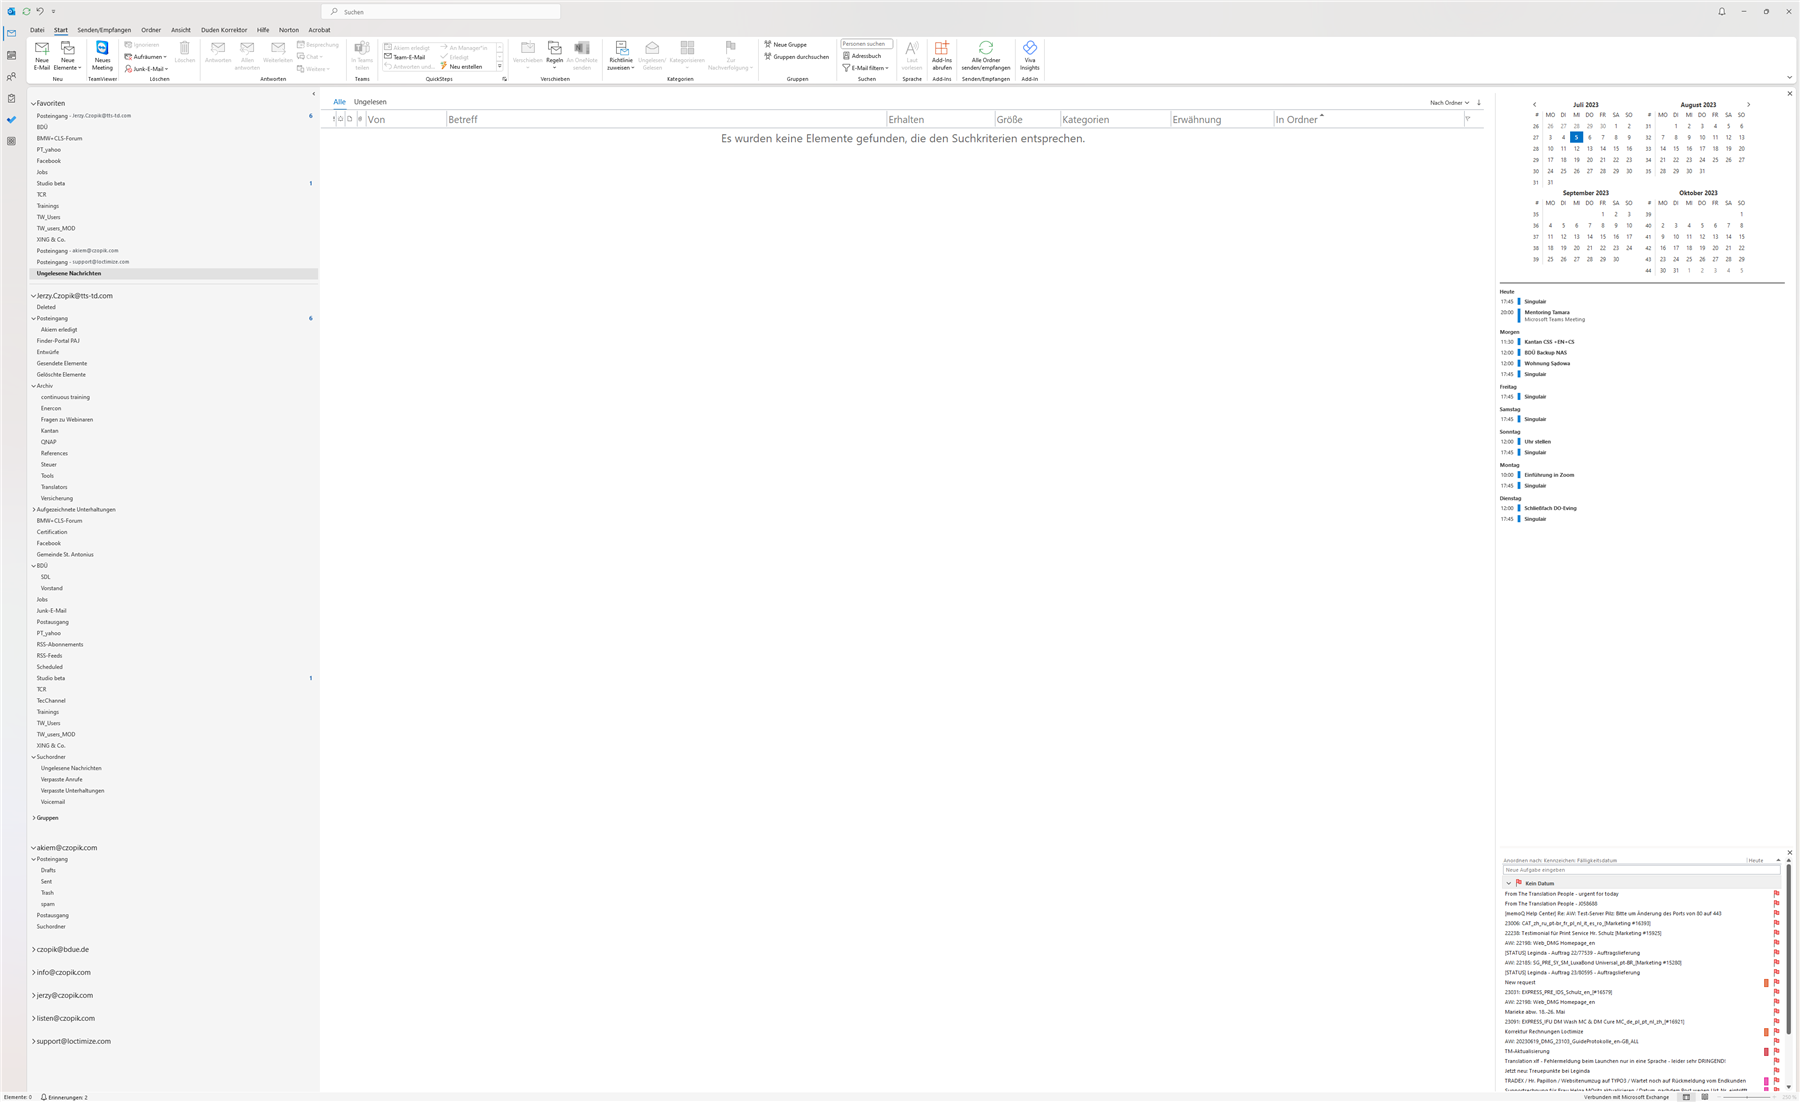 Screenshot of Microsoft Outlook with an empty inbox and a message stating 'Es wurden keine Elemente gefunden, die den Suchkriterien entsprechen.'